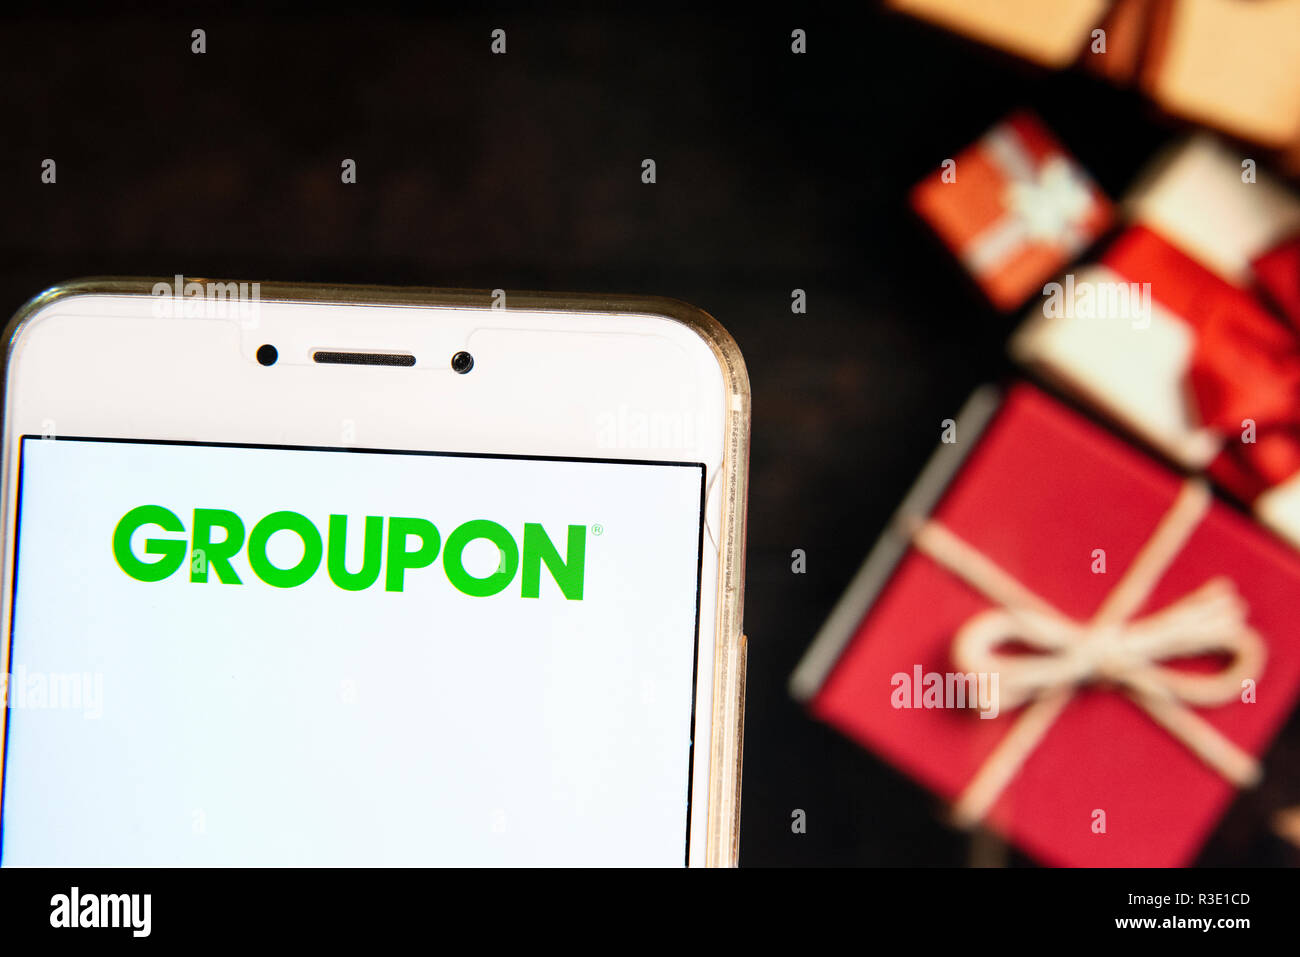 Amerikanische weltweit e-Commerce Marktplatz Groupon Logo ist auf ein Android mobiles Gerät mit Weihnachten gesehen Gaben im Hintergrund gewickelt. Stockfoto